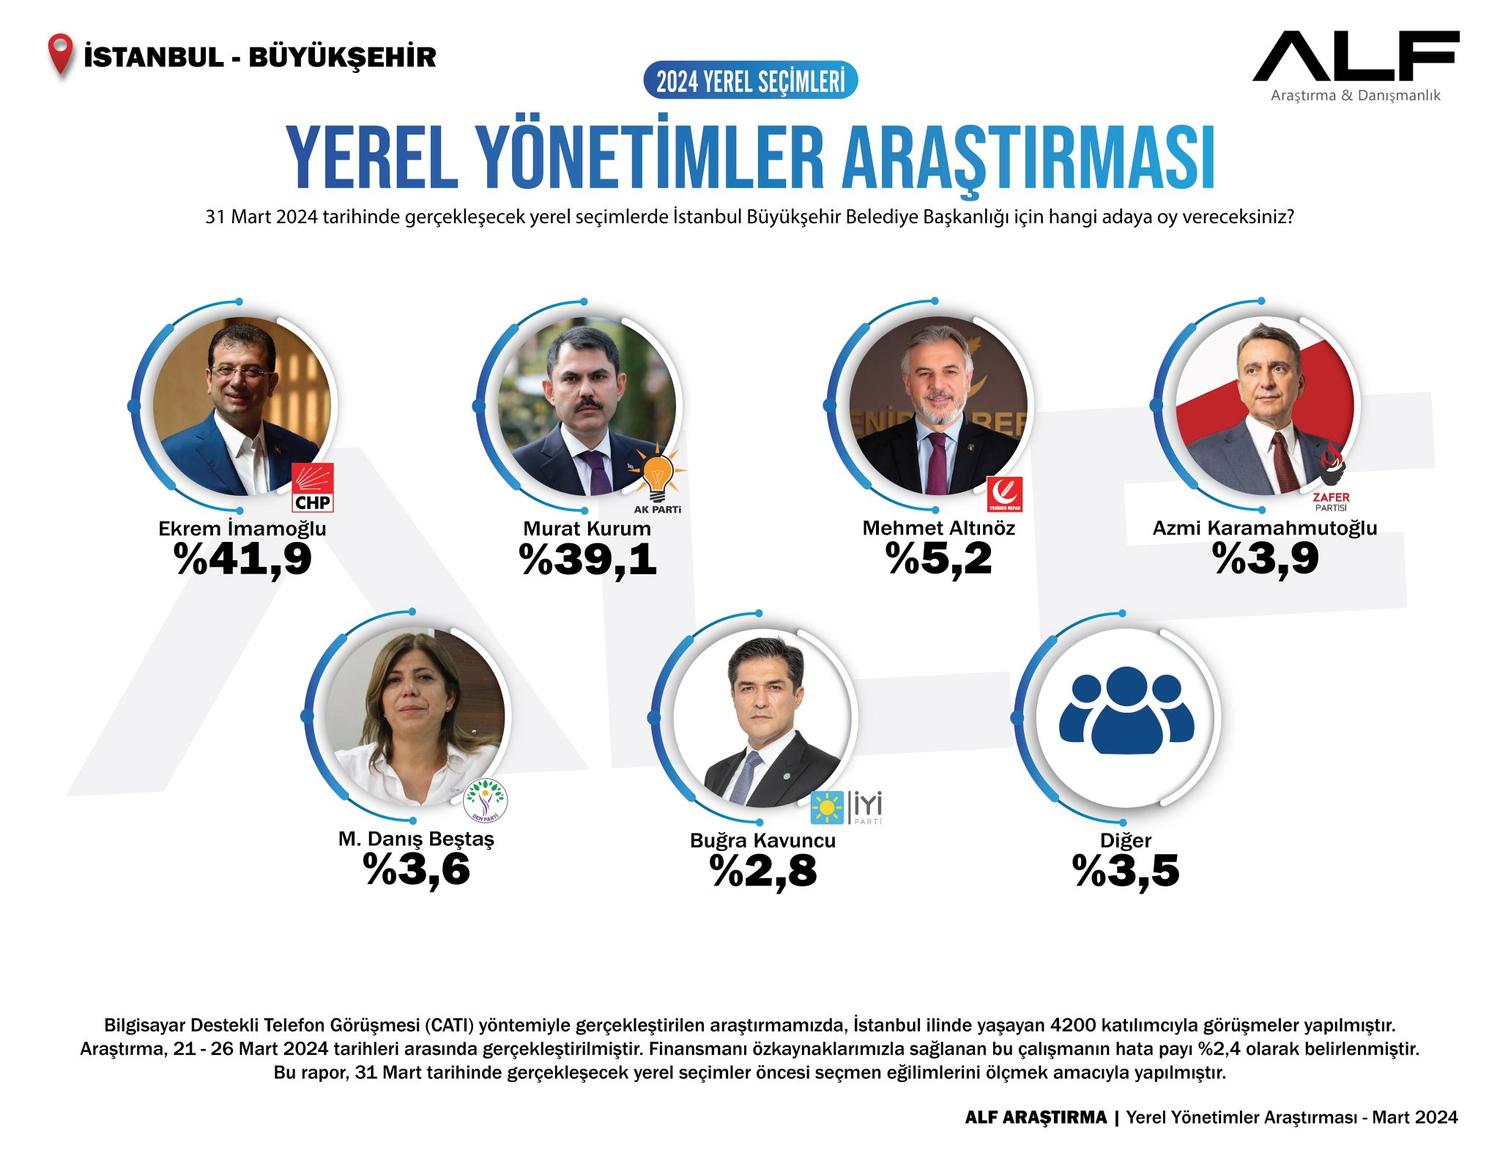 Alf Arastirma istanbul yerel secim anketi - imamoglu 2,8 puan farkla önde